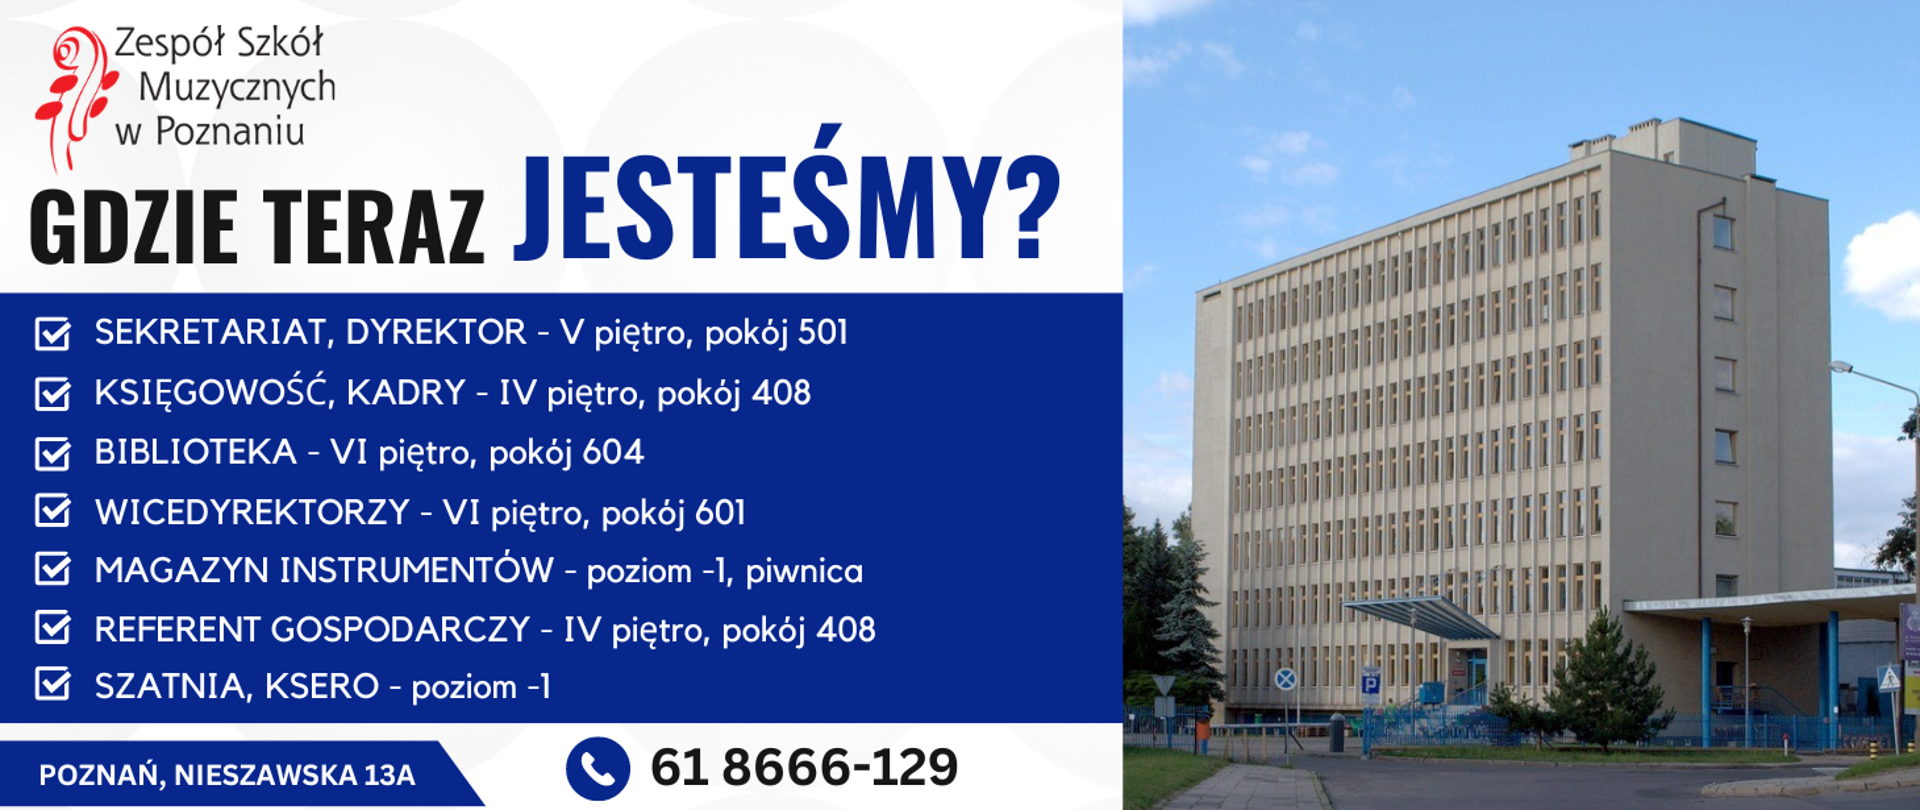 Grafika ze zdjęciem budynku szkoły przy ul. Nieszawskiej 13a w Poznaniu i szczegółowymi informacjami gdzie znajdują się w budynku poszczególne jednostki.